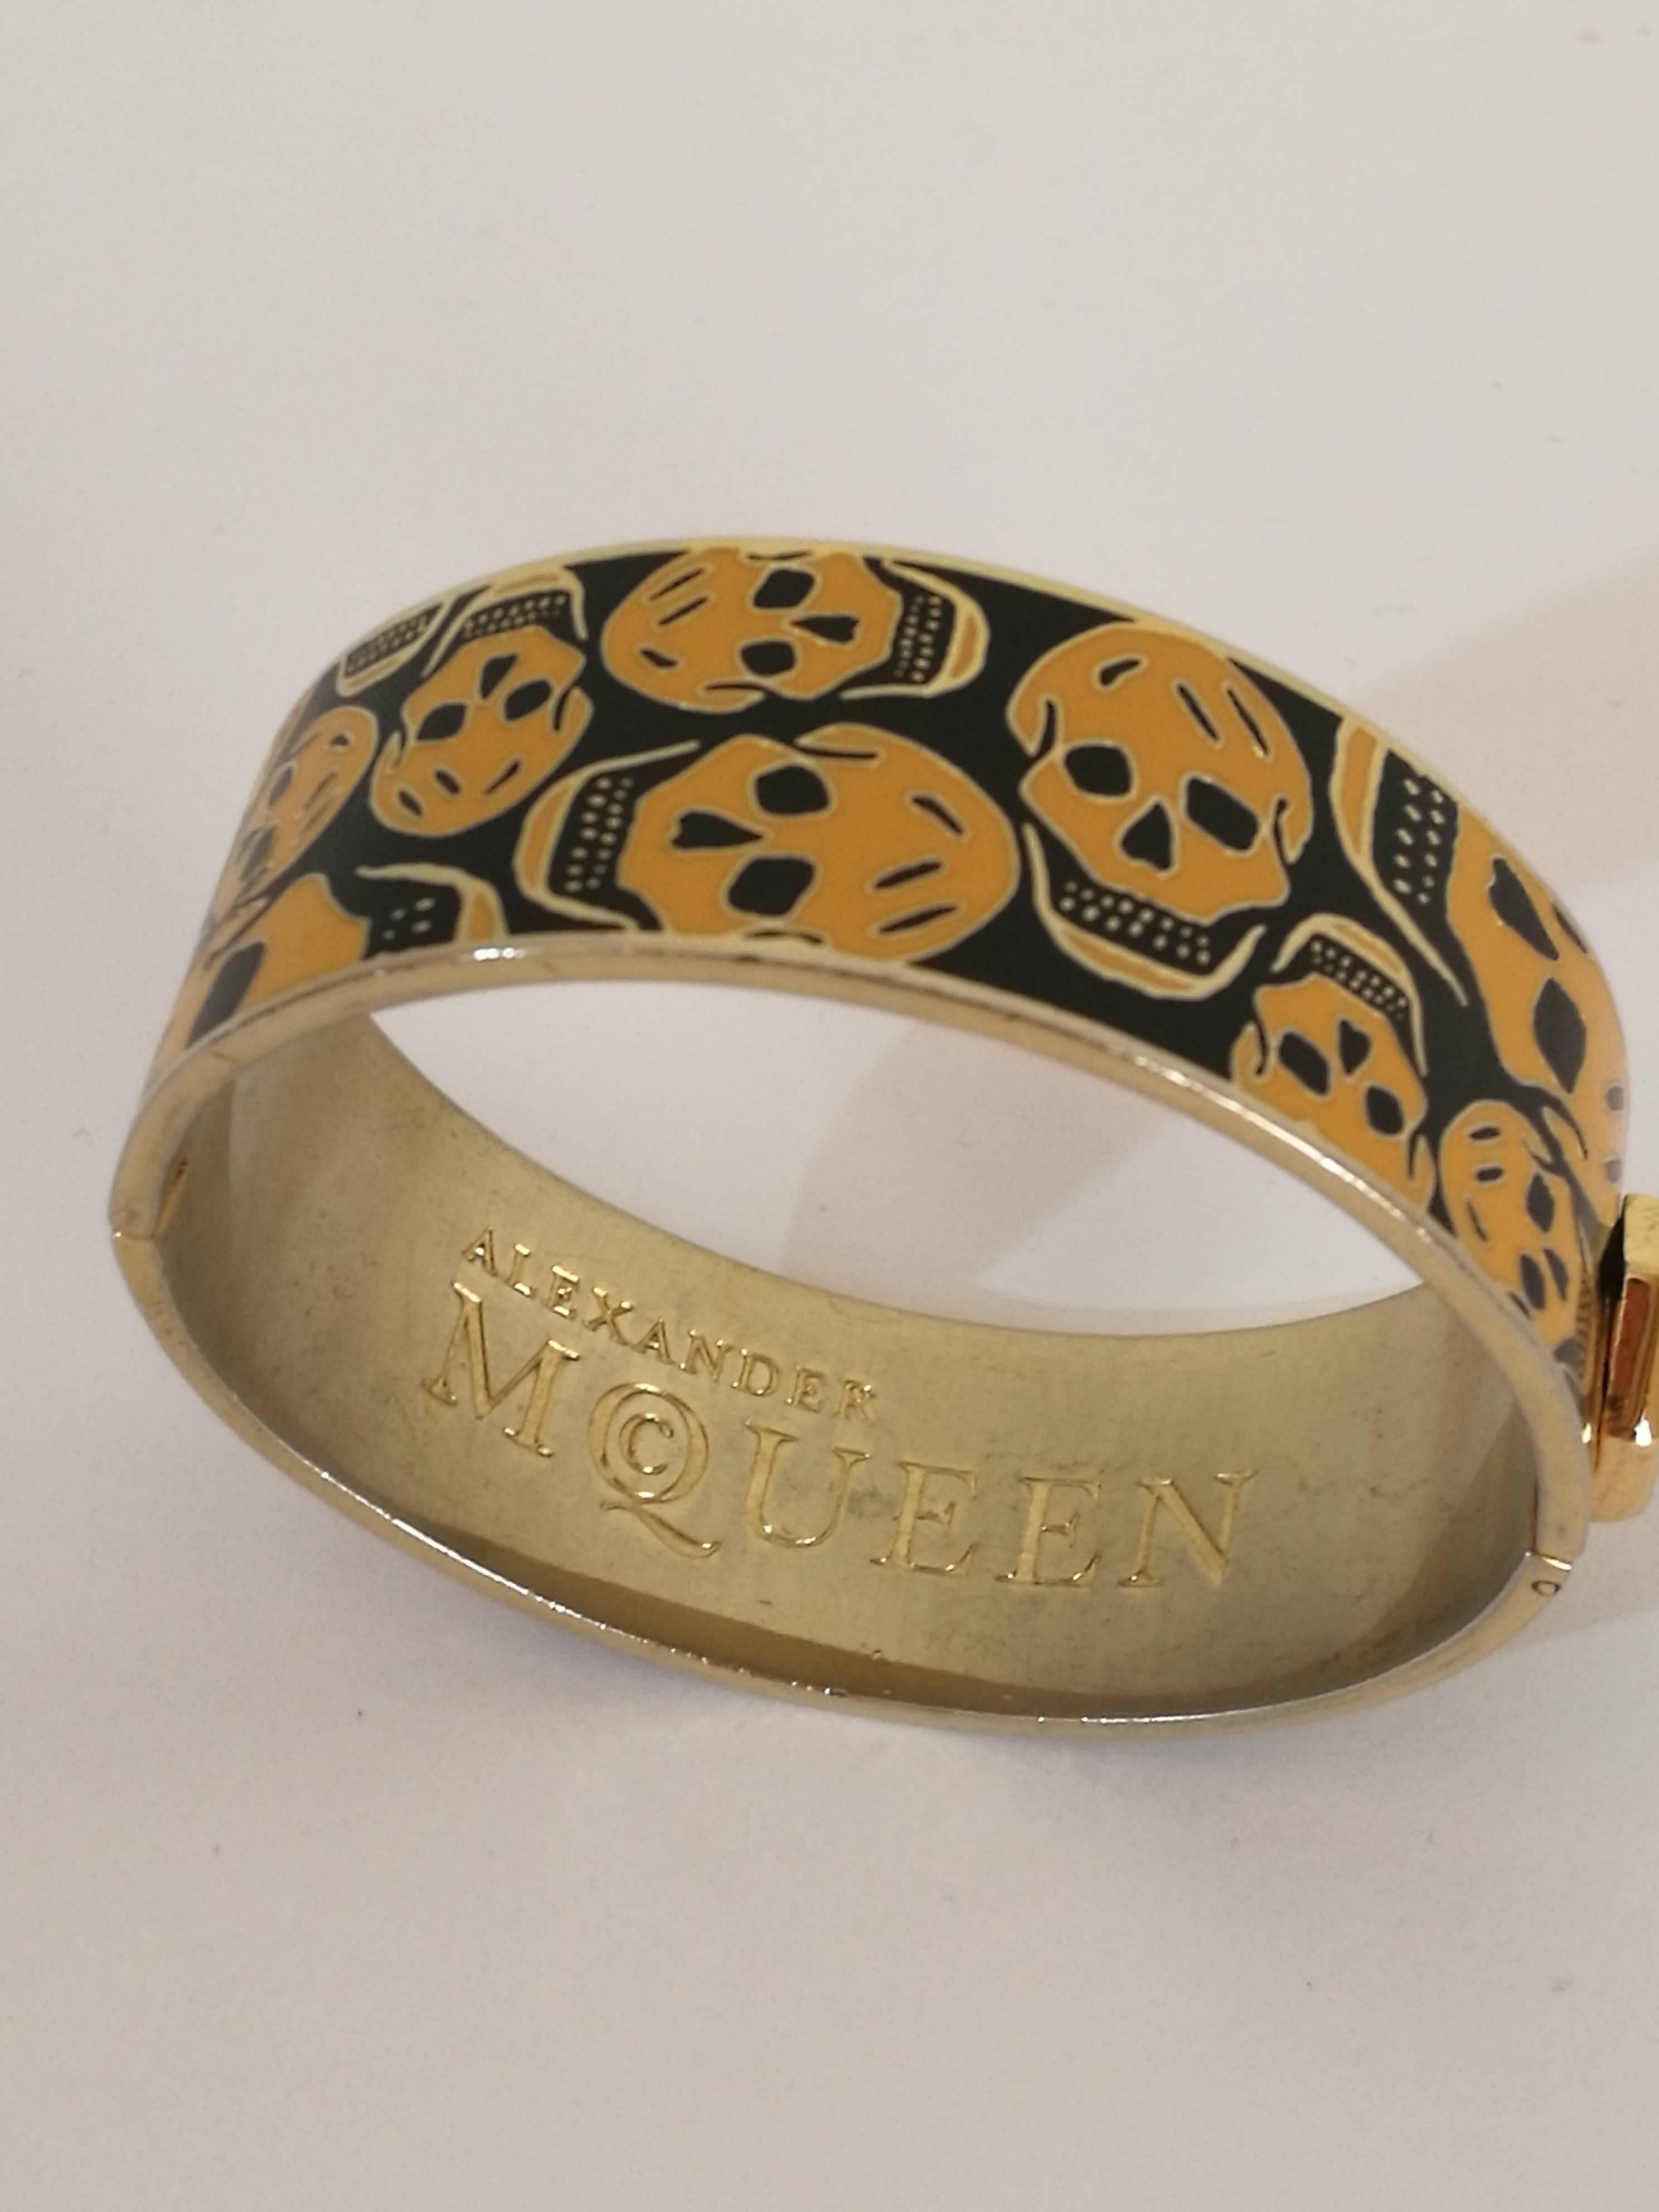 Alexander McQueen Gold tone Skulls black Bracelet

